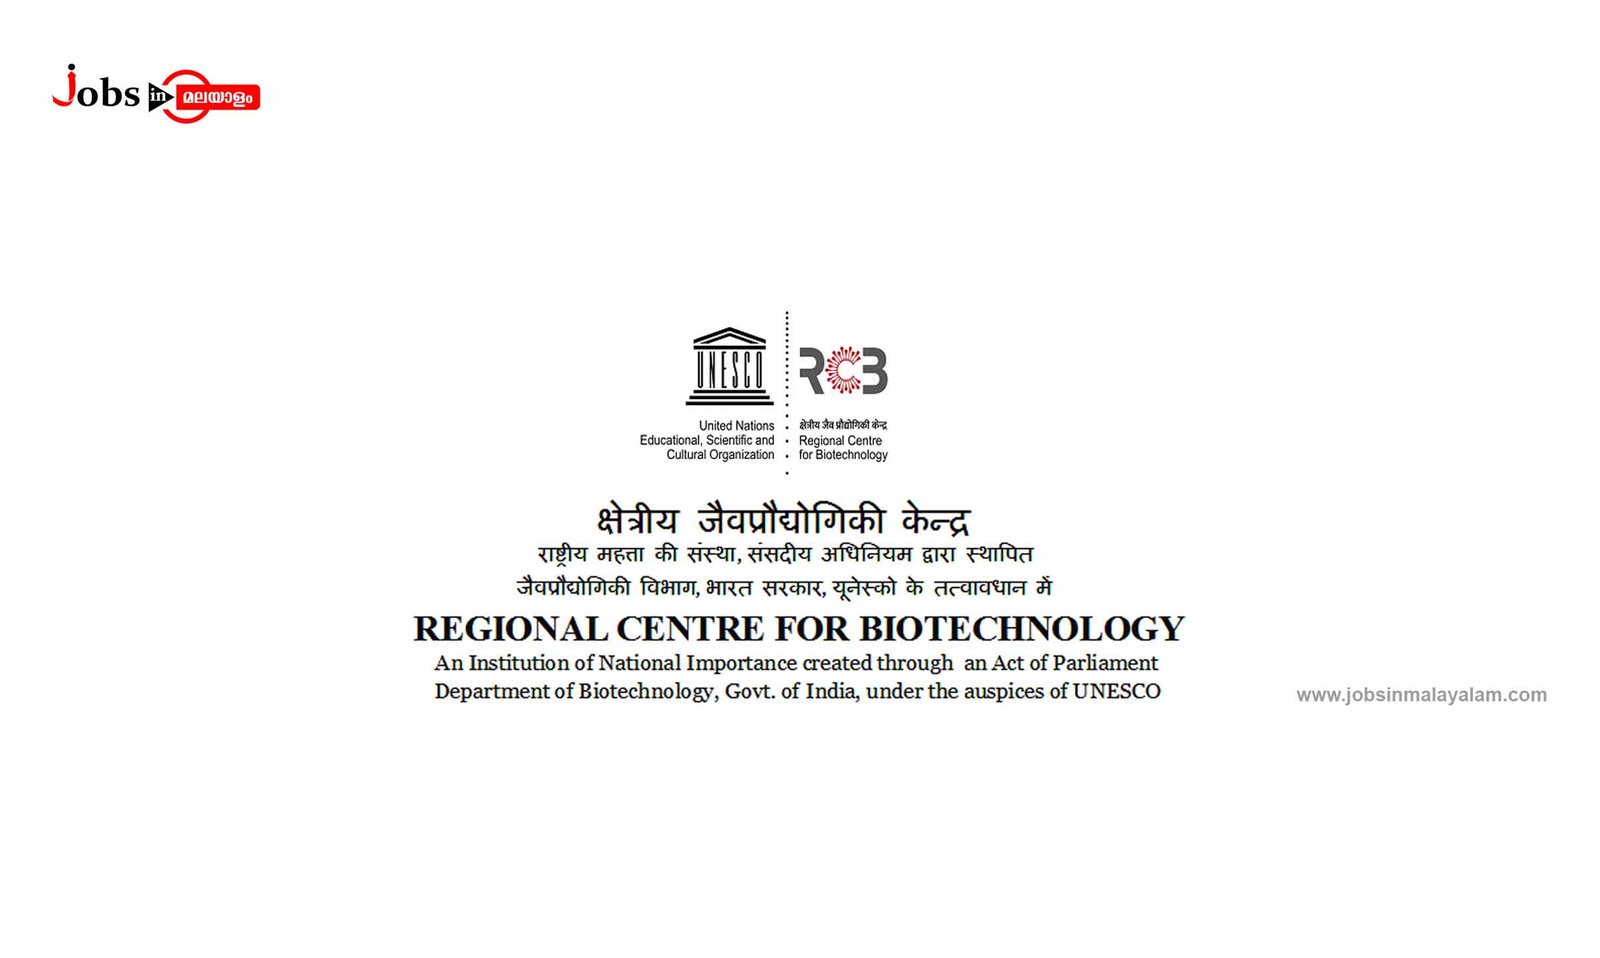 Regional Centre for Biotechnology (RCB)